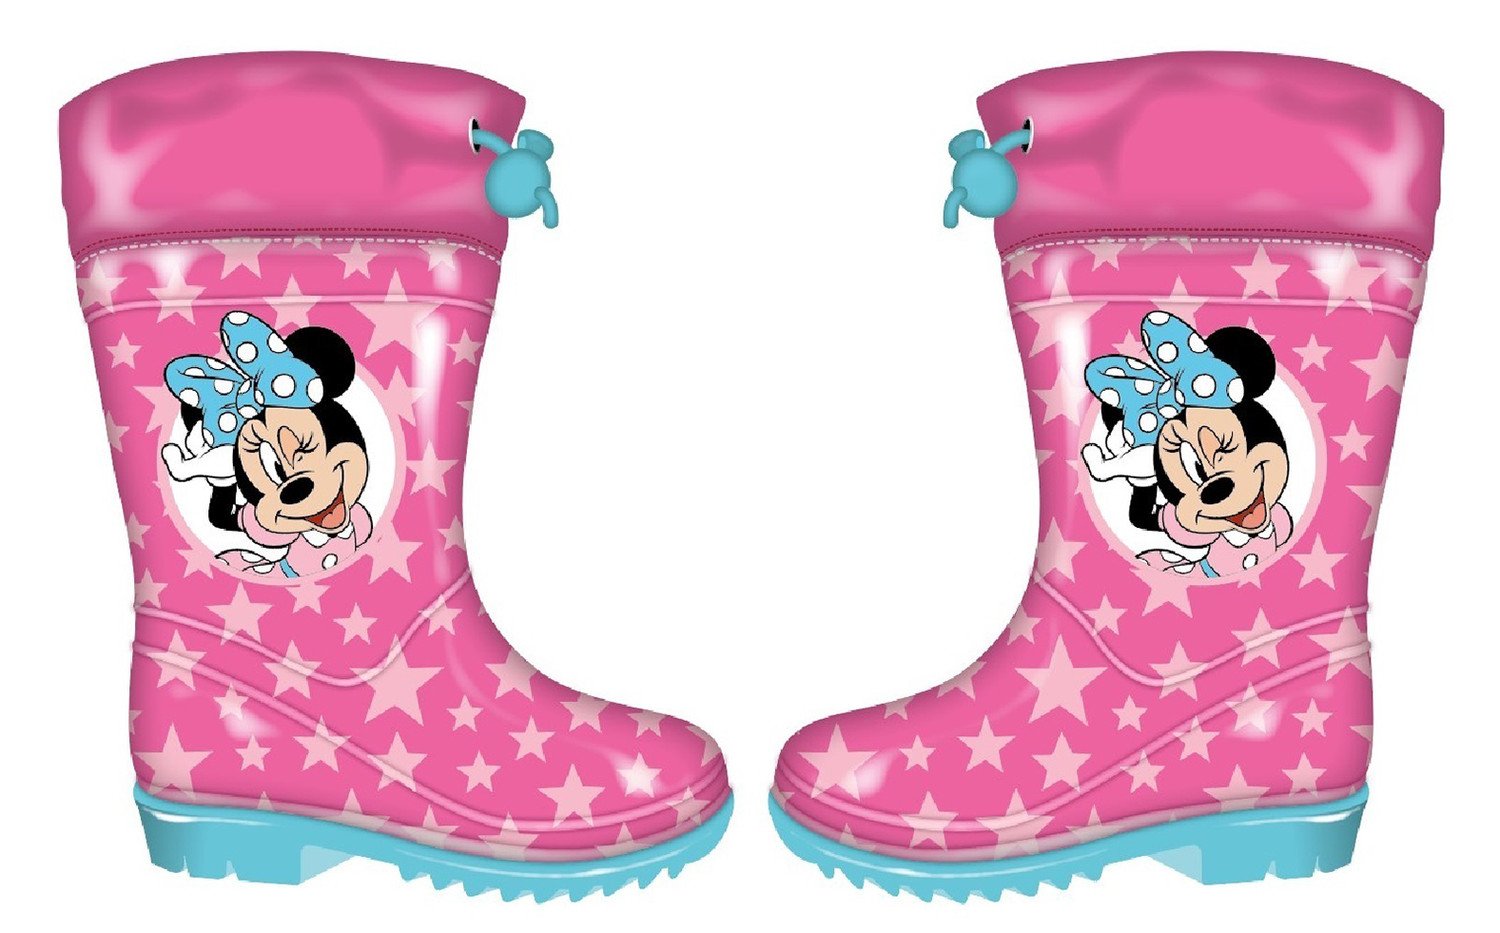 Disney Minnie Mouse dětské gumáky - růžové Velikost: 24